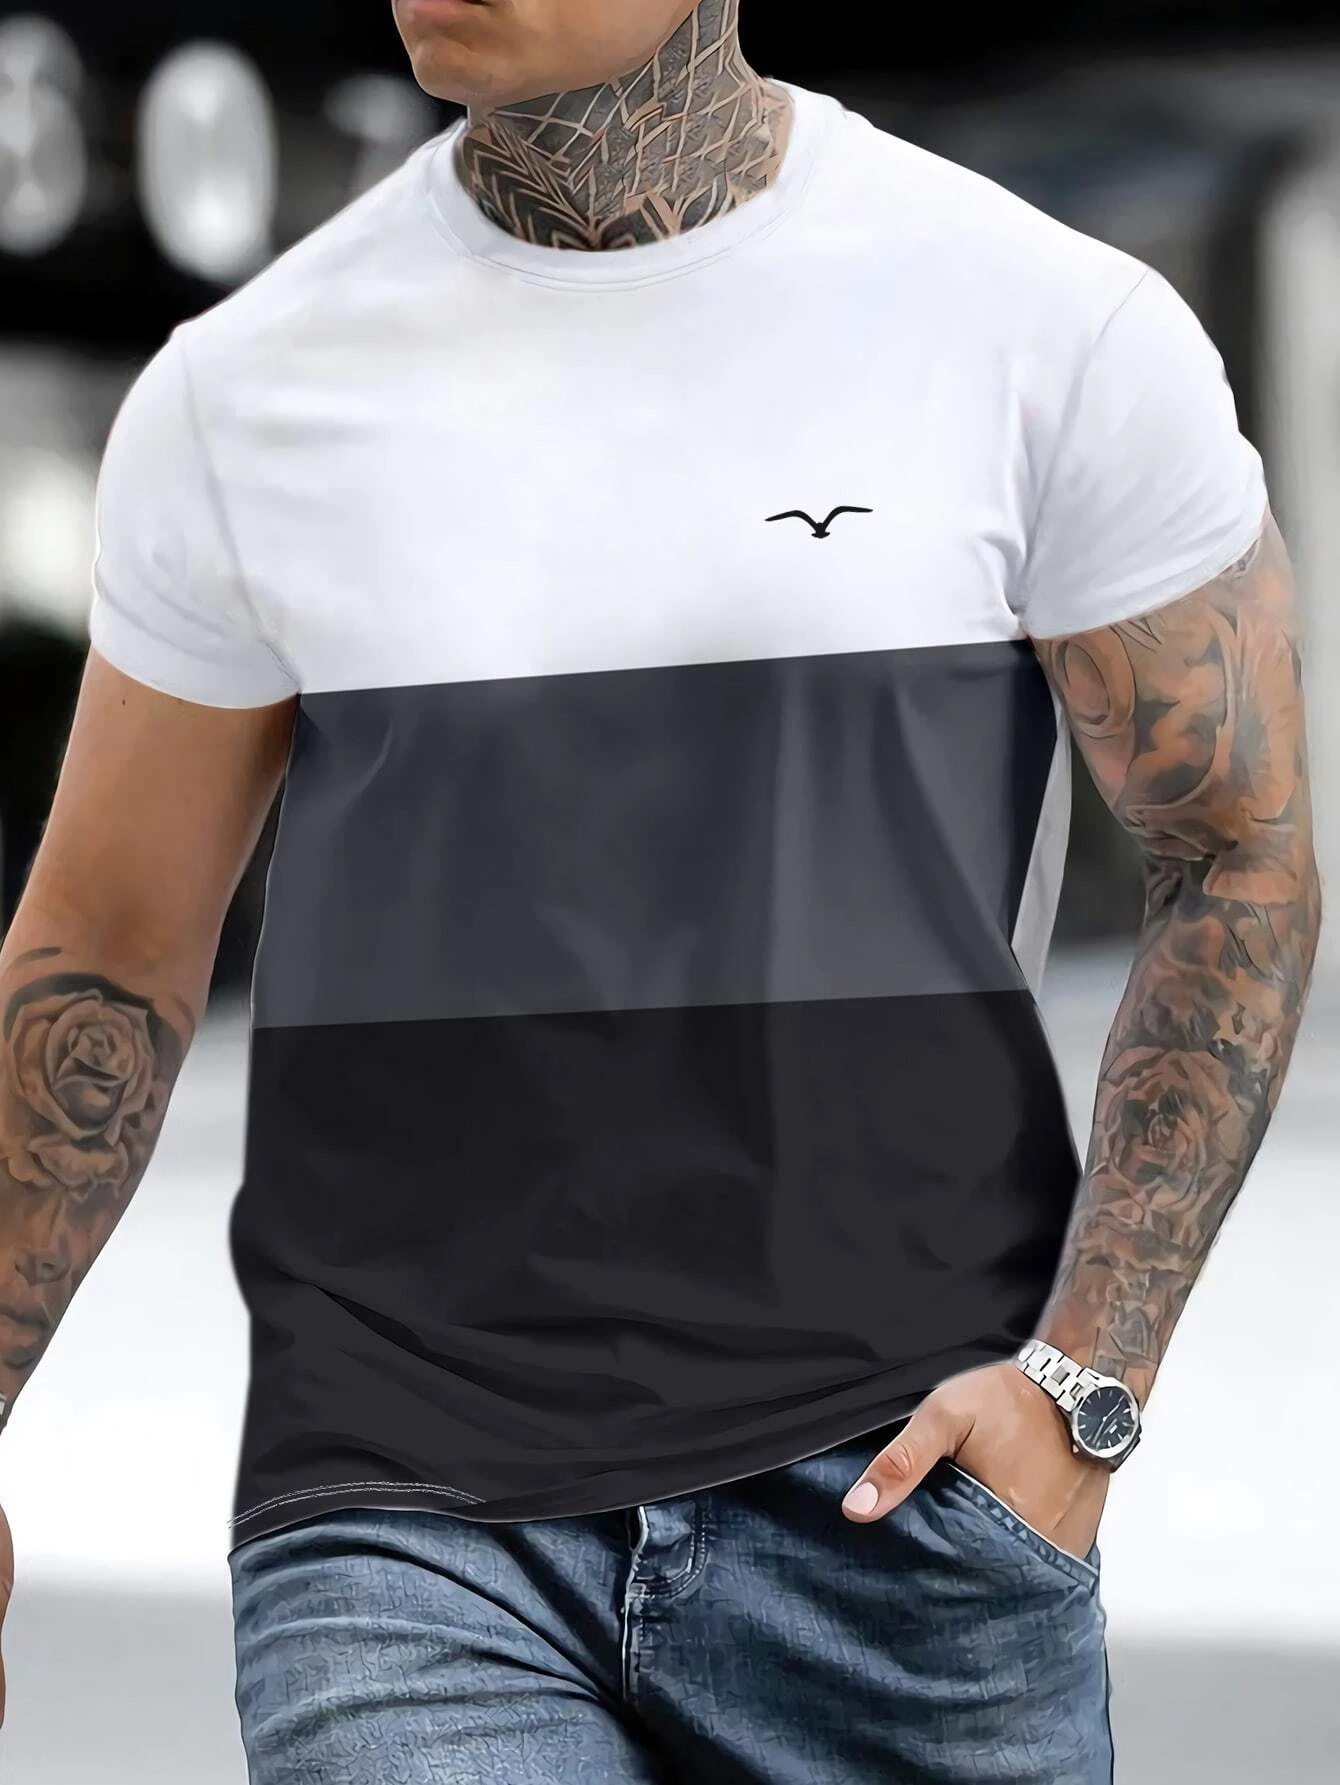 Manfinity Homme Hombres de color combinado Camiseta & de cintura